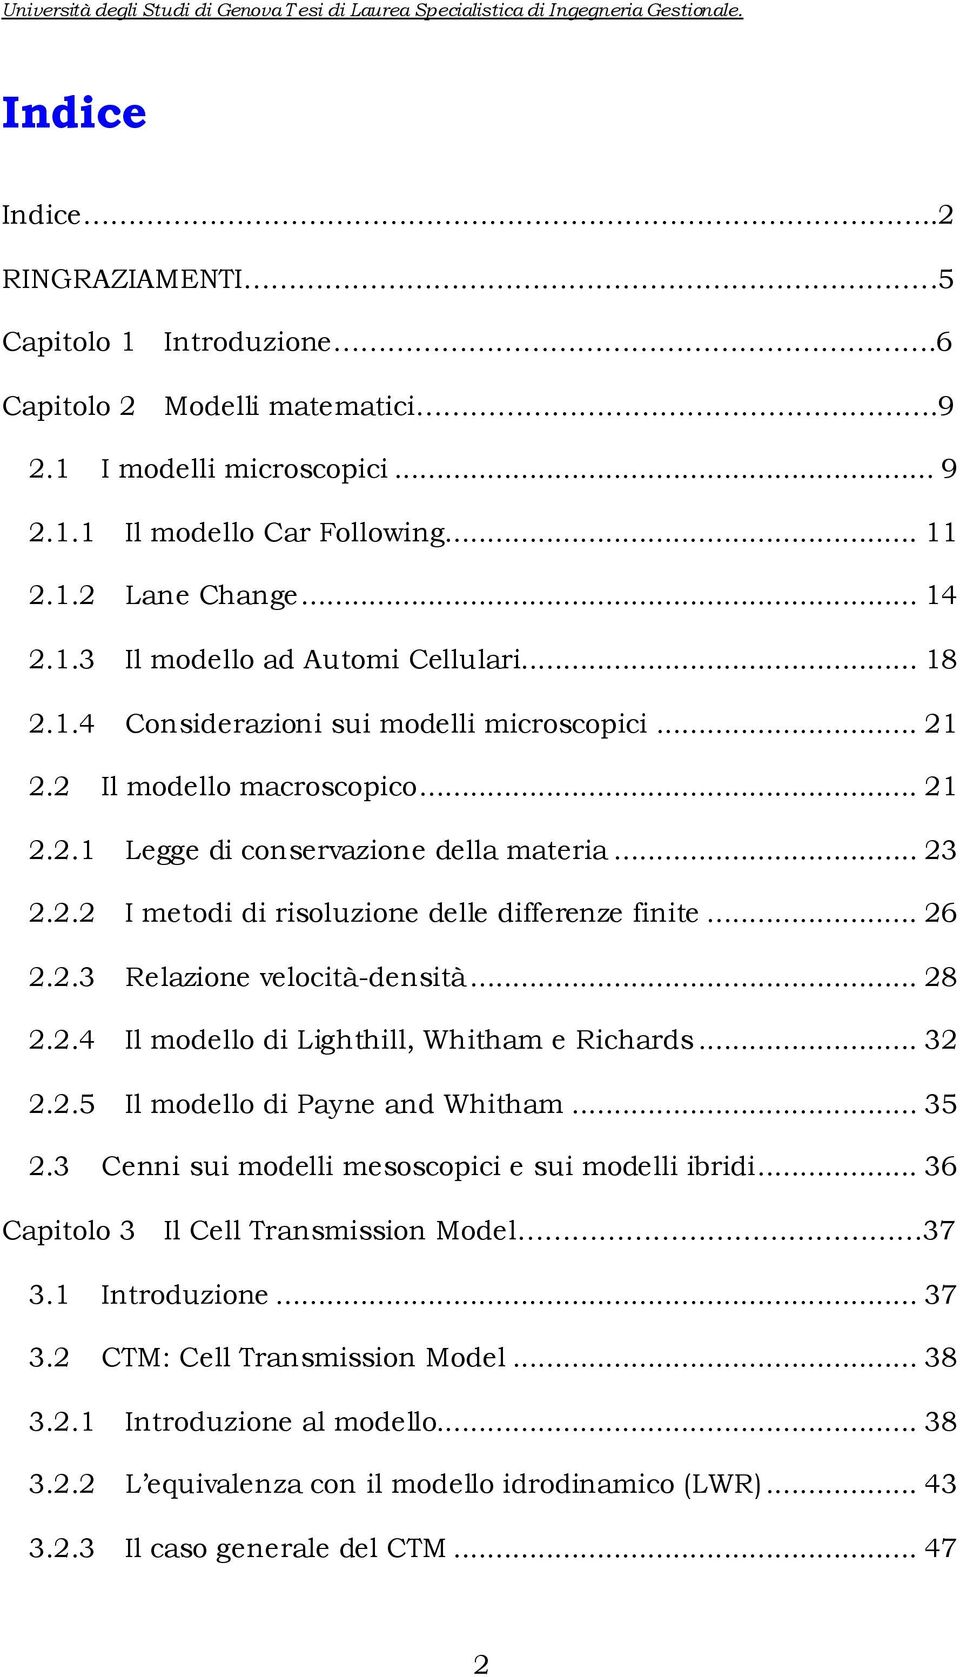 .. 28 2.2.4 Il modello d Lghthll, Whtham e Rchards... 32 2.2.5 Il modello d Payne and Whtham... 35 2.3 Cenn su modell mesoscopc e su modell brd... 36 Captolo 3 Il Cell Transmsson Model 37 3.